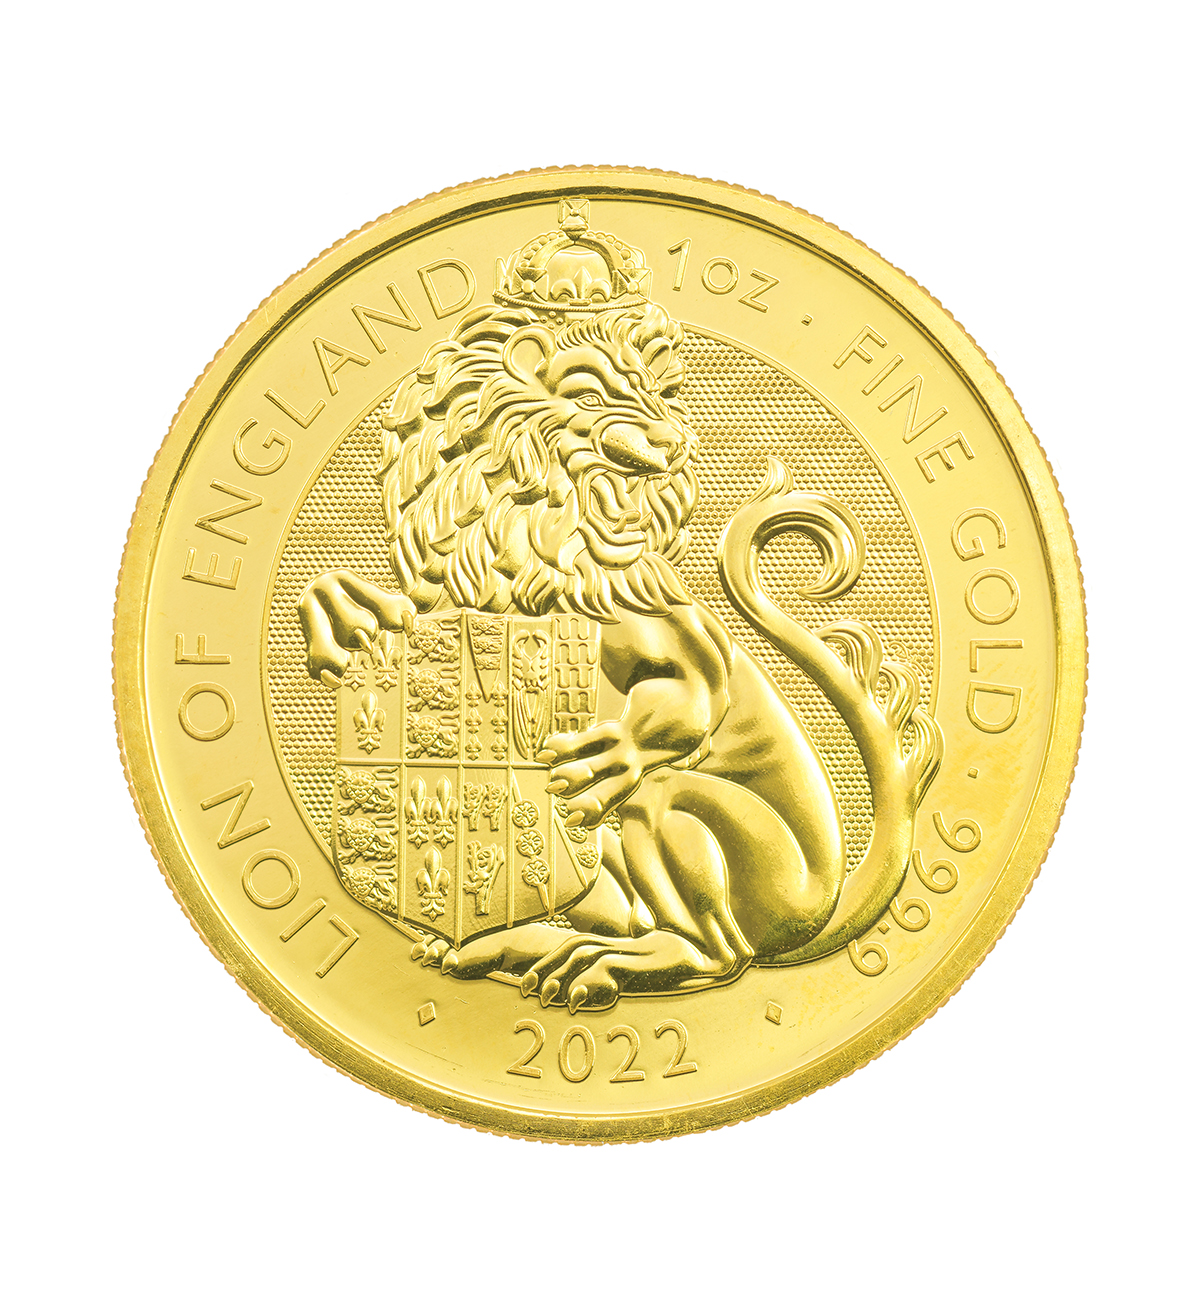 Lote Monedas De Oro De 1/10 De Oz: Lince Ibérico 2022 Y Moneda Año Del Tigre Oro 2022